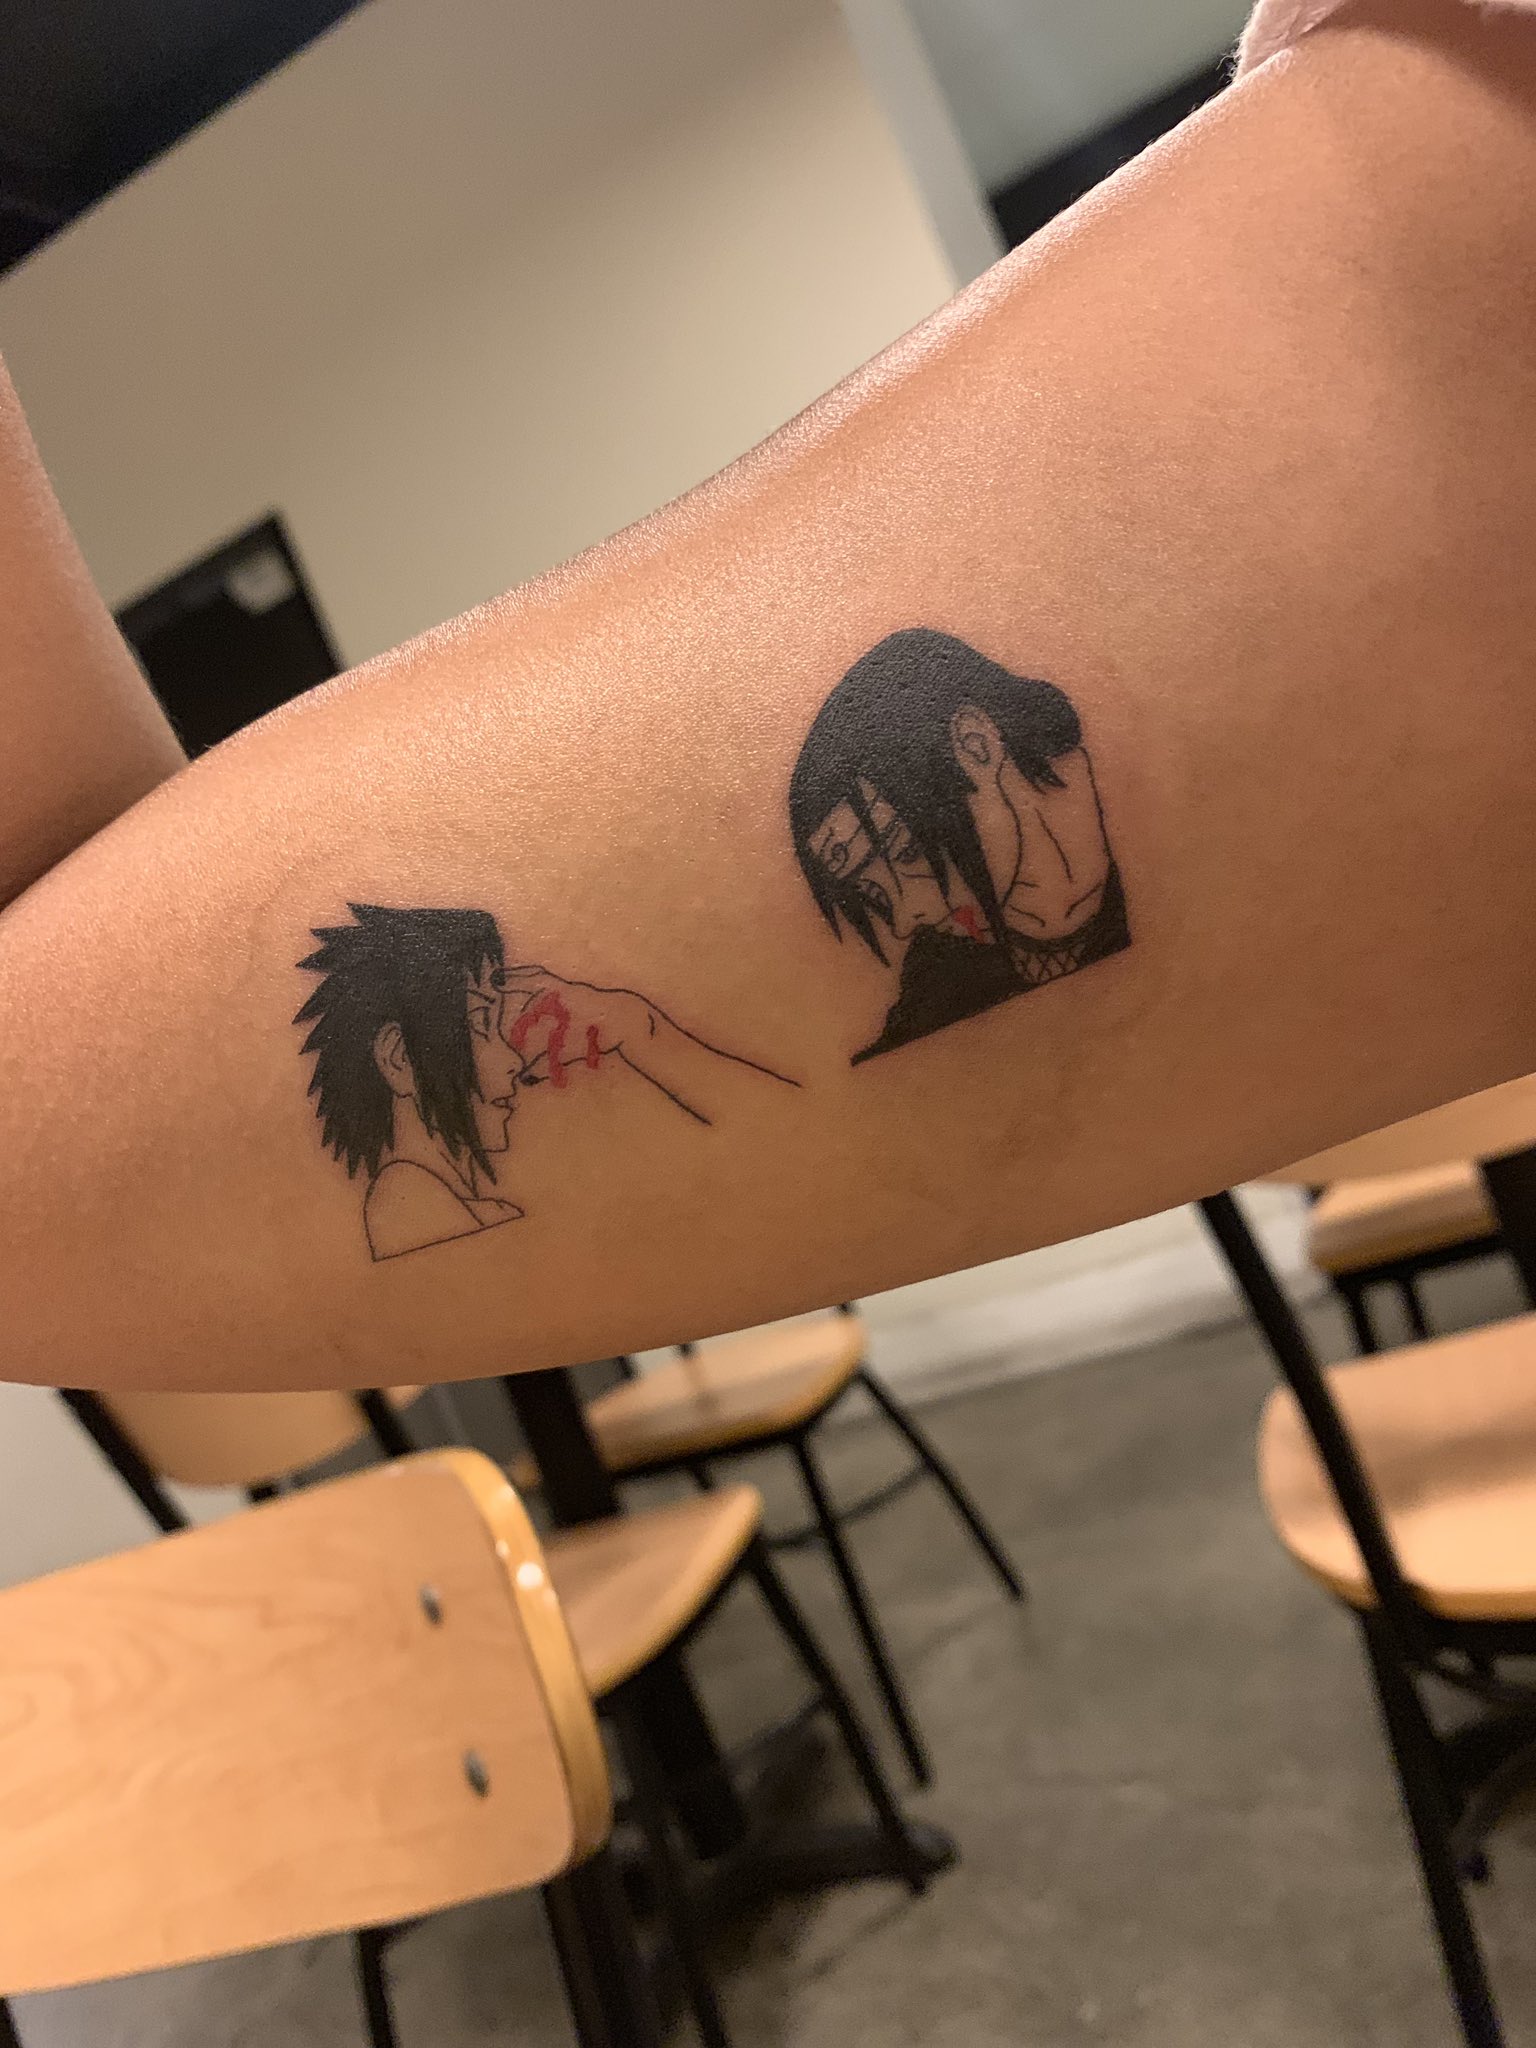 Bruno Salas on Instagram SasukeItachi del clan Uchiha  Siempre soy  feliz haciendo escenas de Naruto    sasuke   Anime tattoos Naruto  tattoo Tattoos